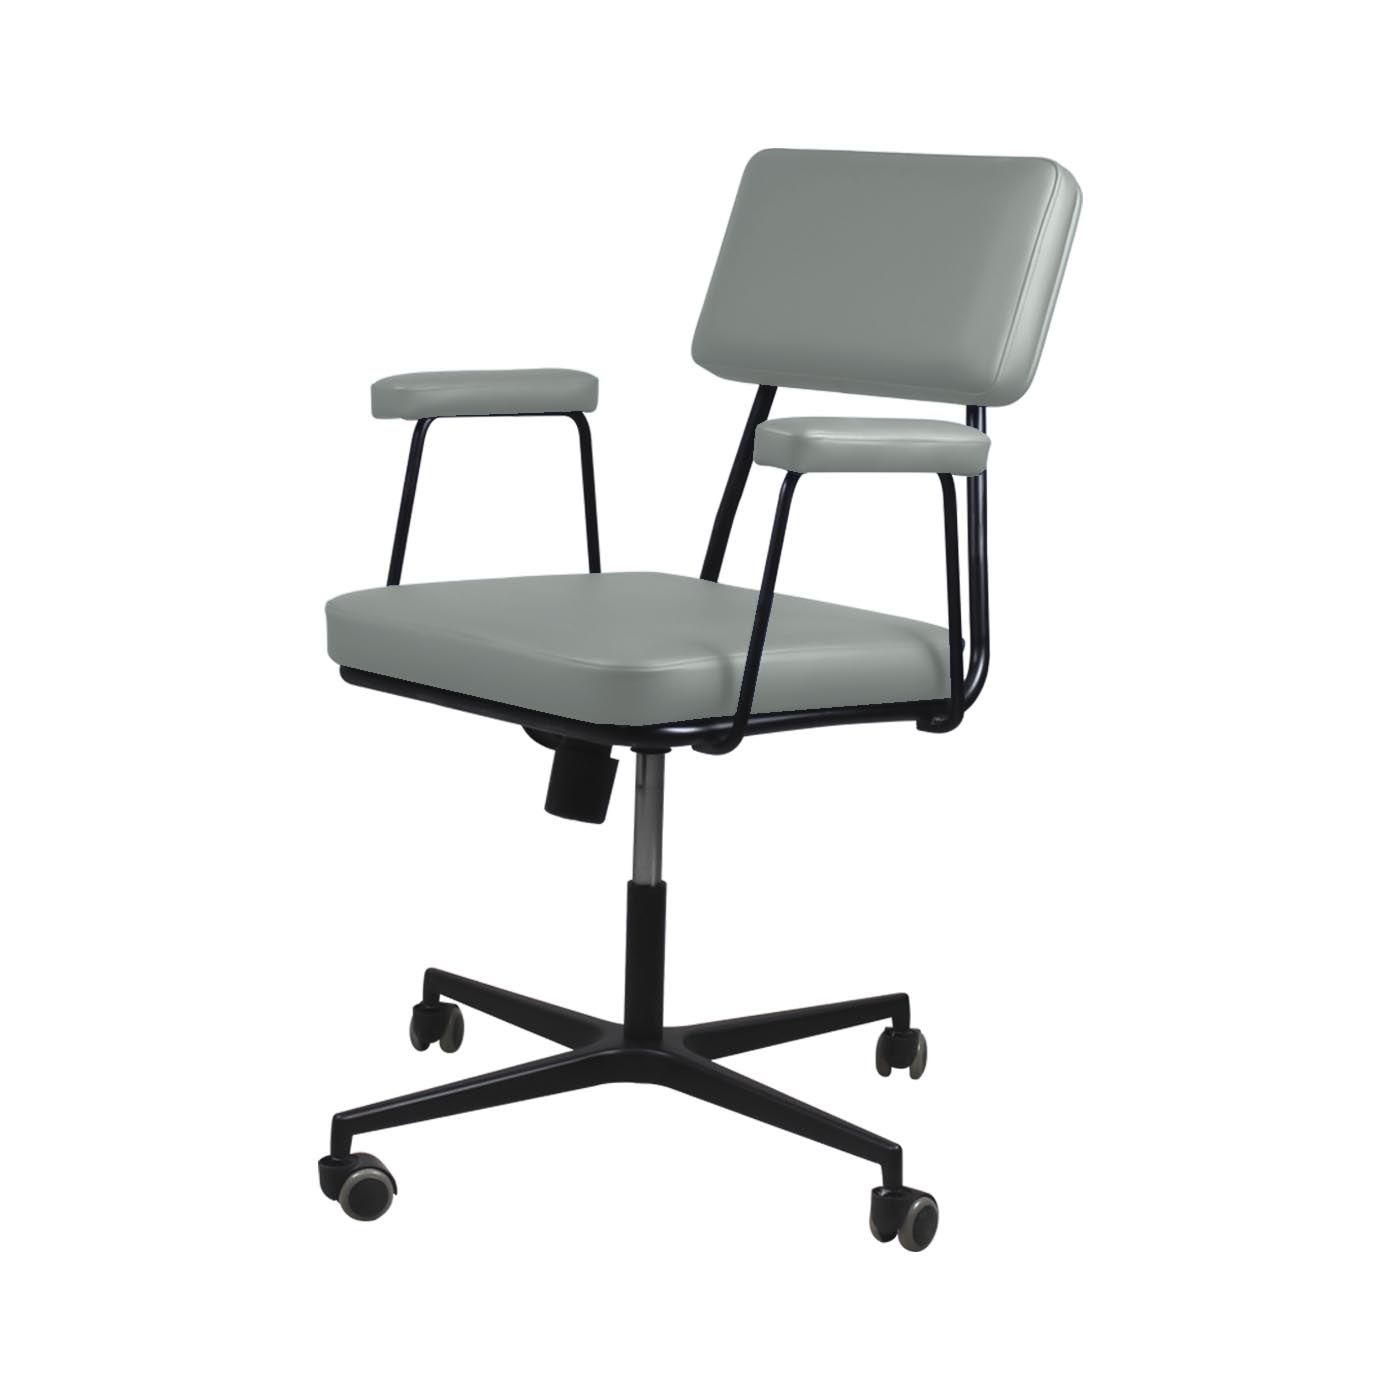 Noblitt Pale Green Work Chair